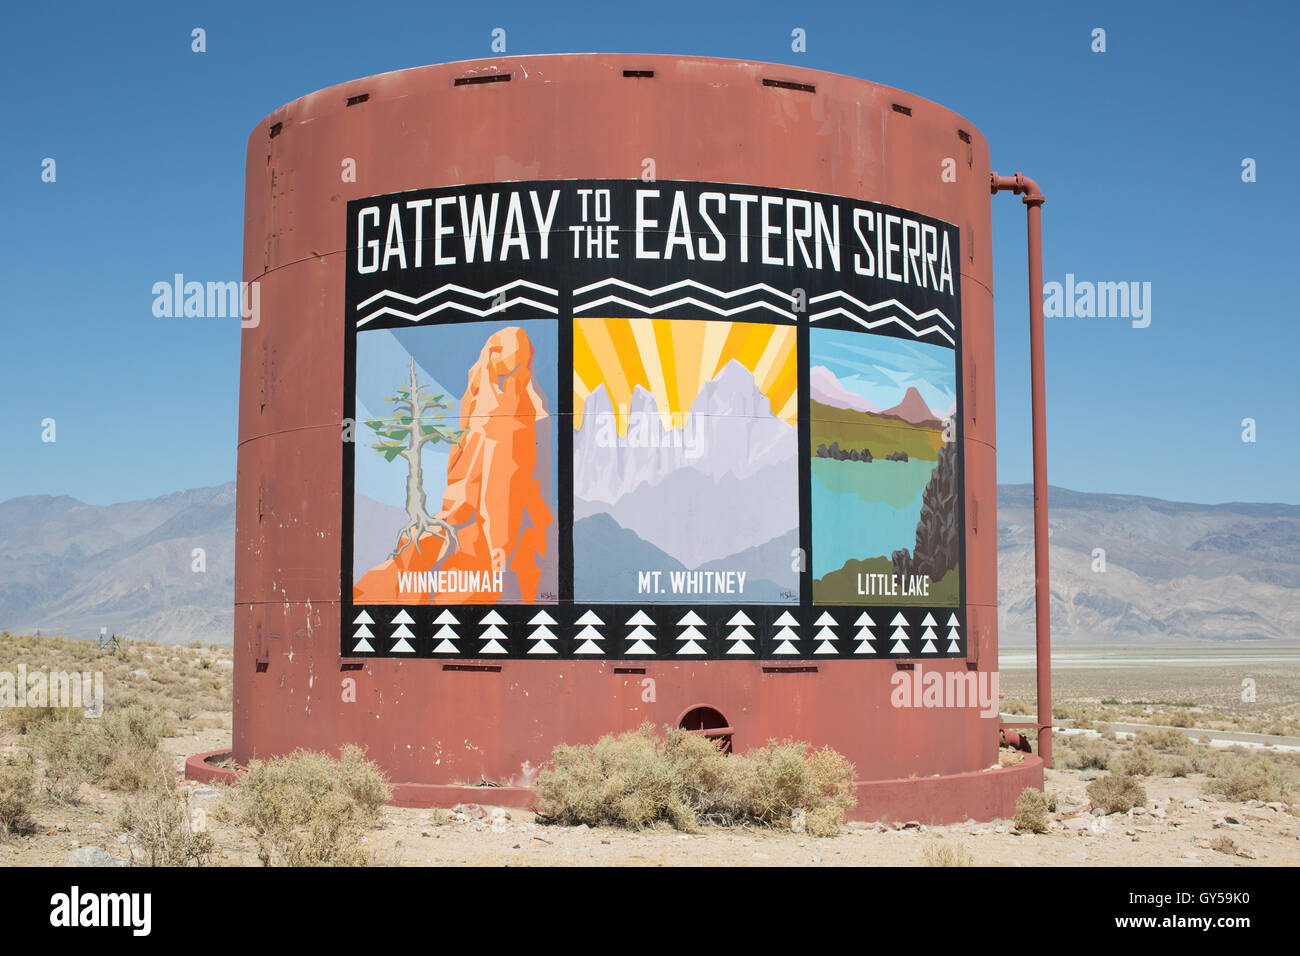 Gateway per la Sierra orientale segno sull'autostrada 395 in California. Foto Stock